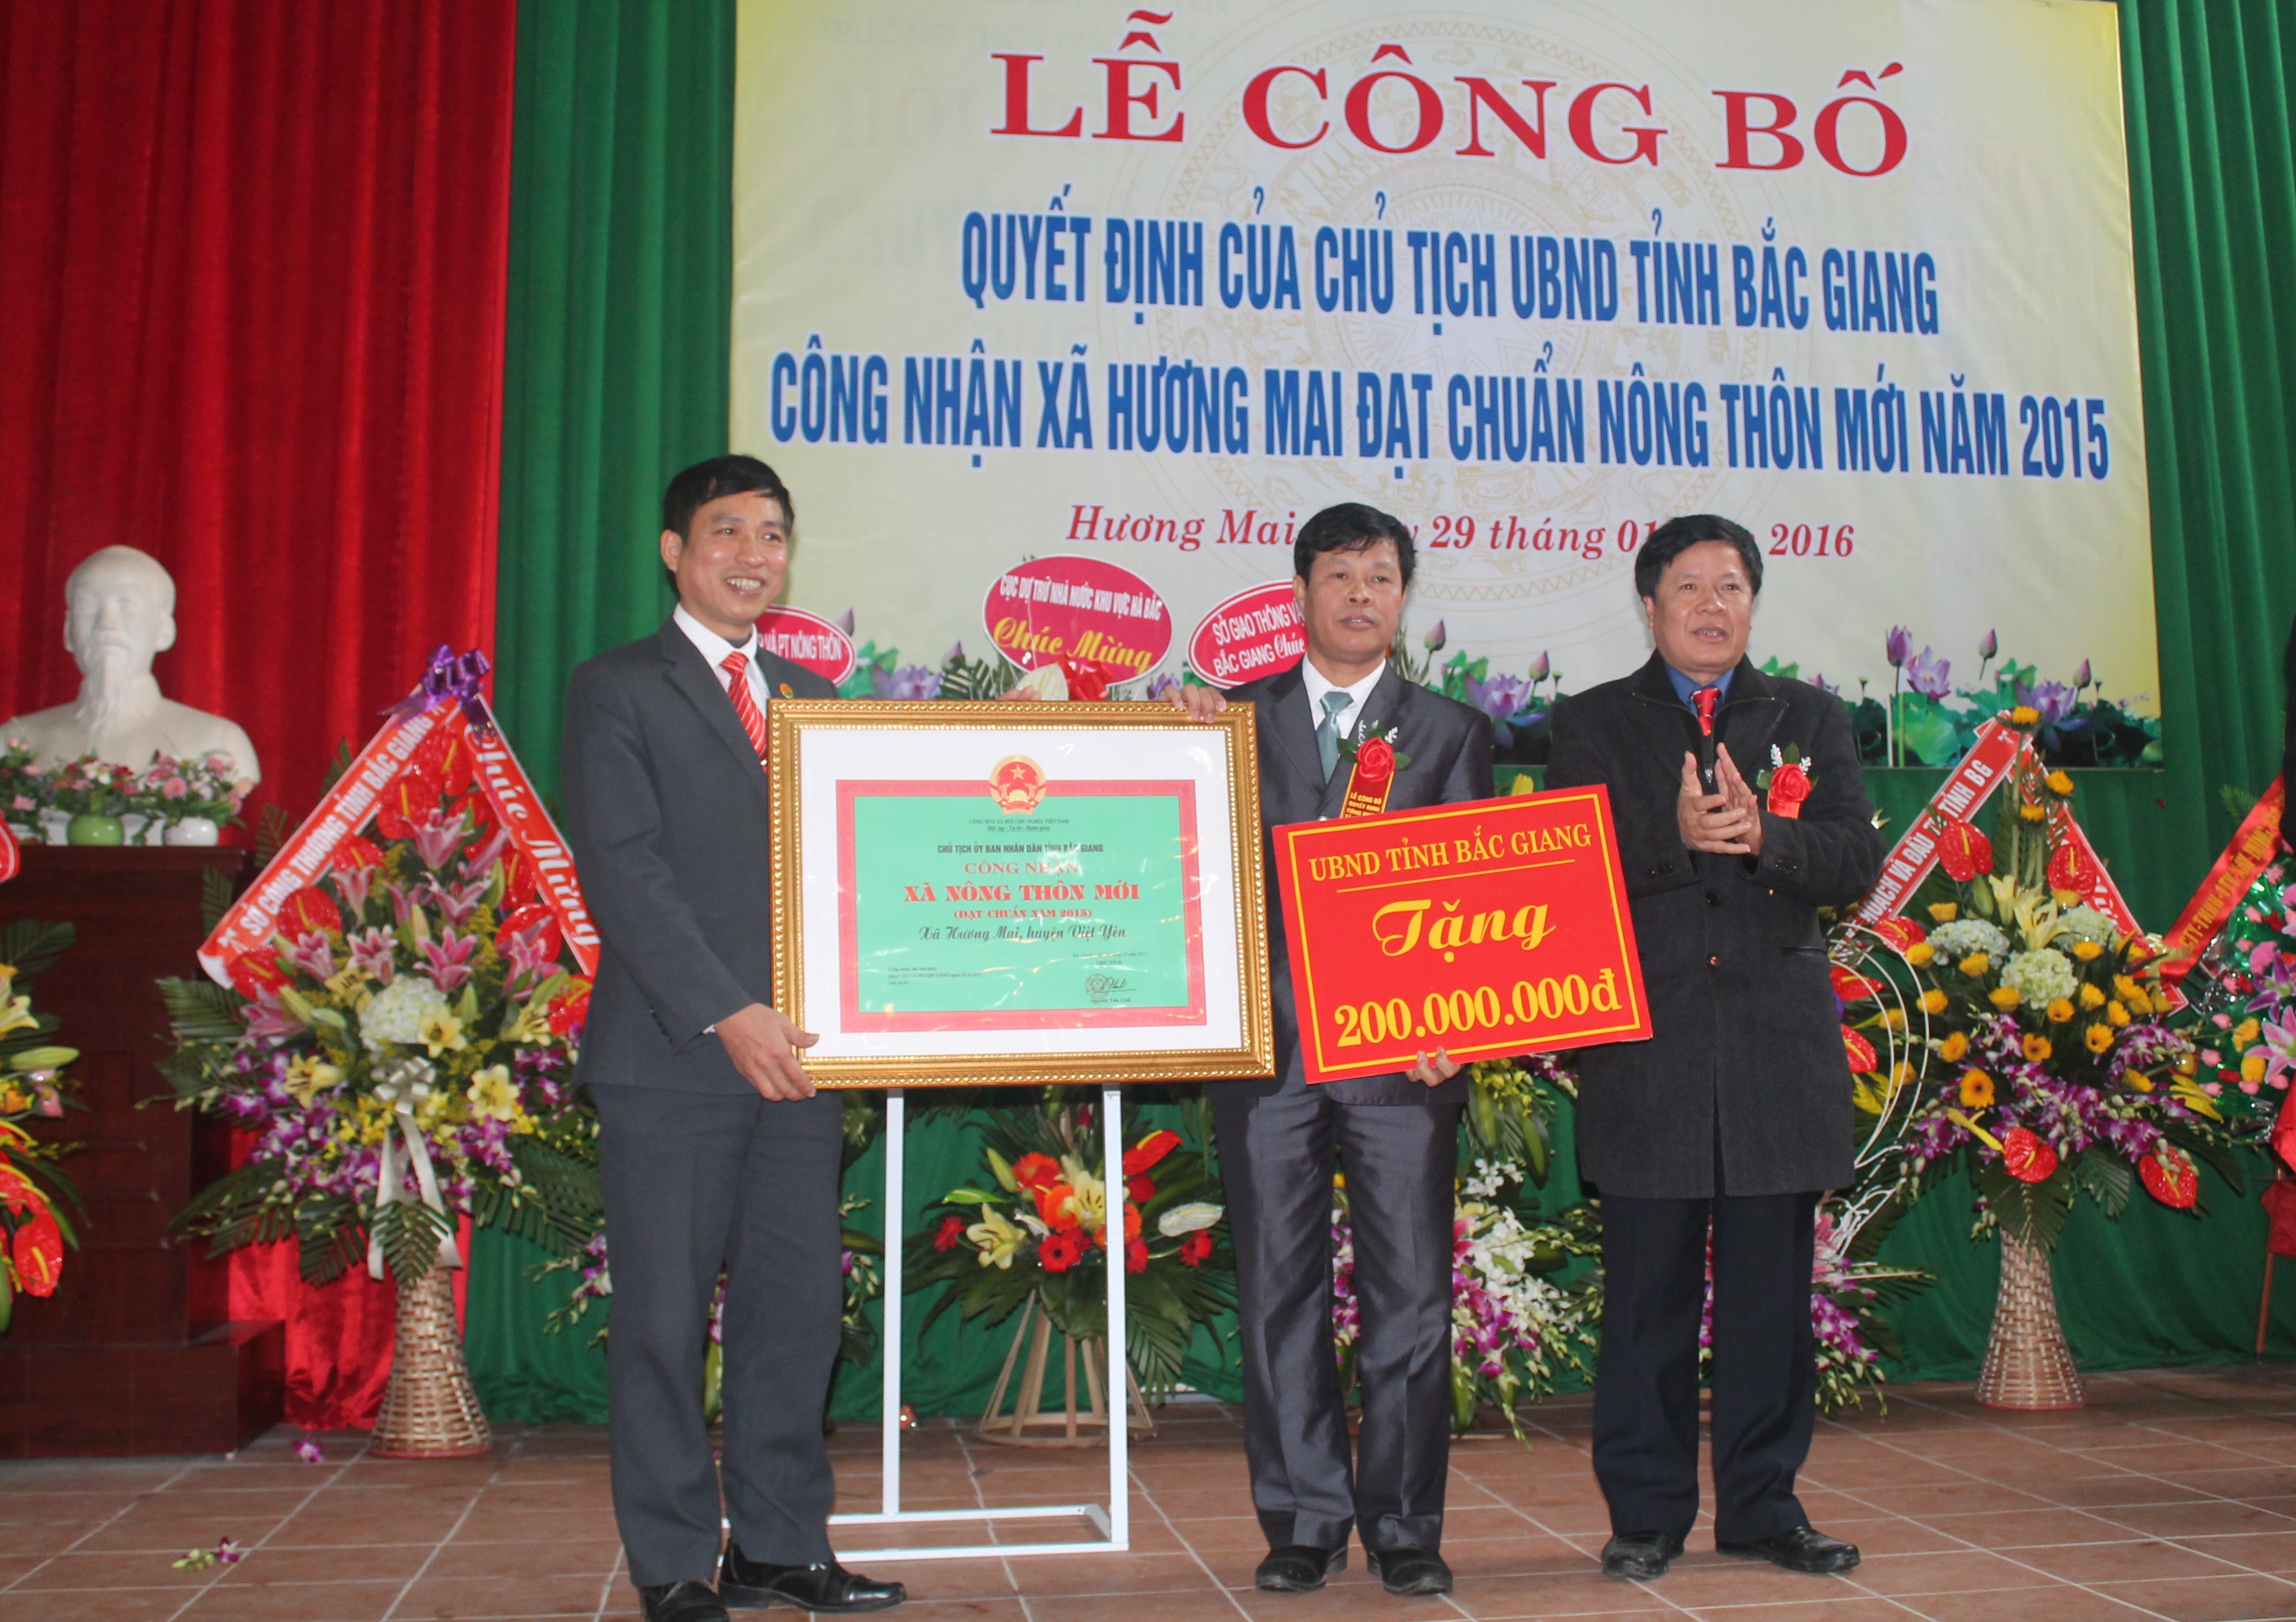 Hương Mai: Tổ chức lễ công bố của Chủ Tịch UBND Tỉnh công nhận xã đạt chuẩn xây dựng nông thôn...